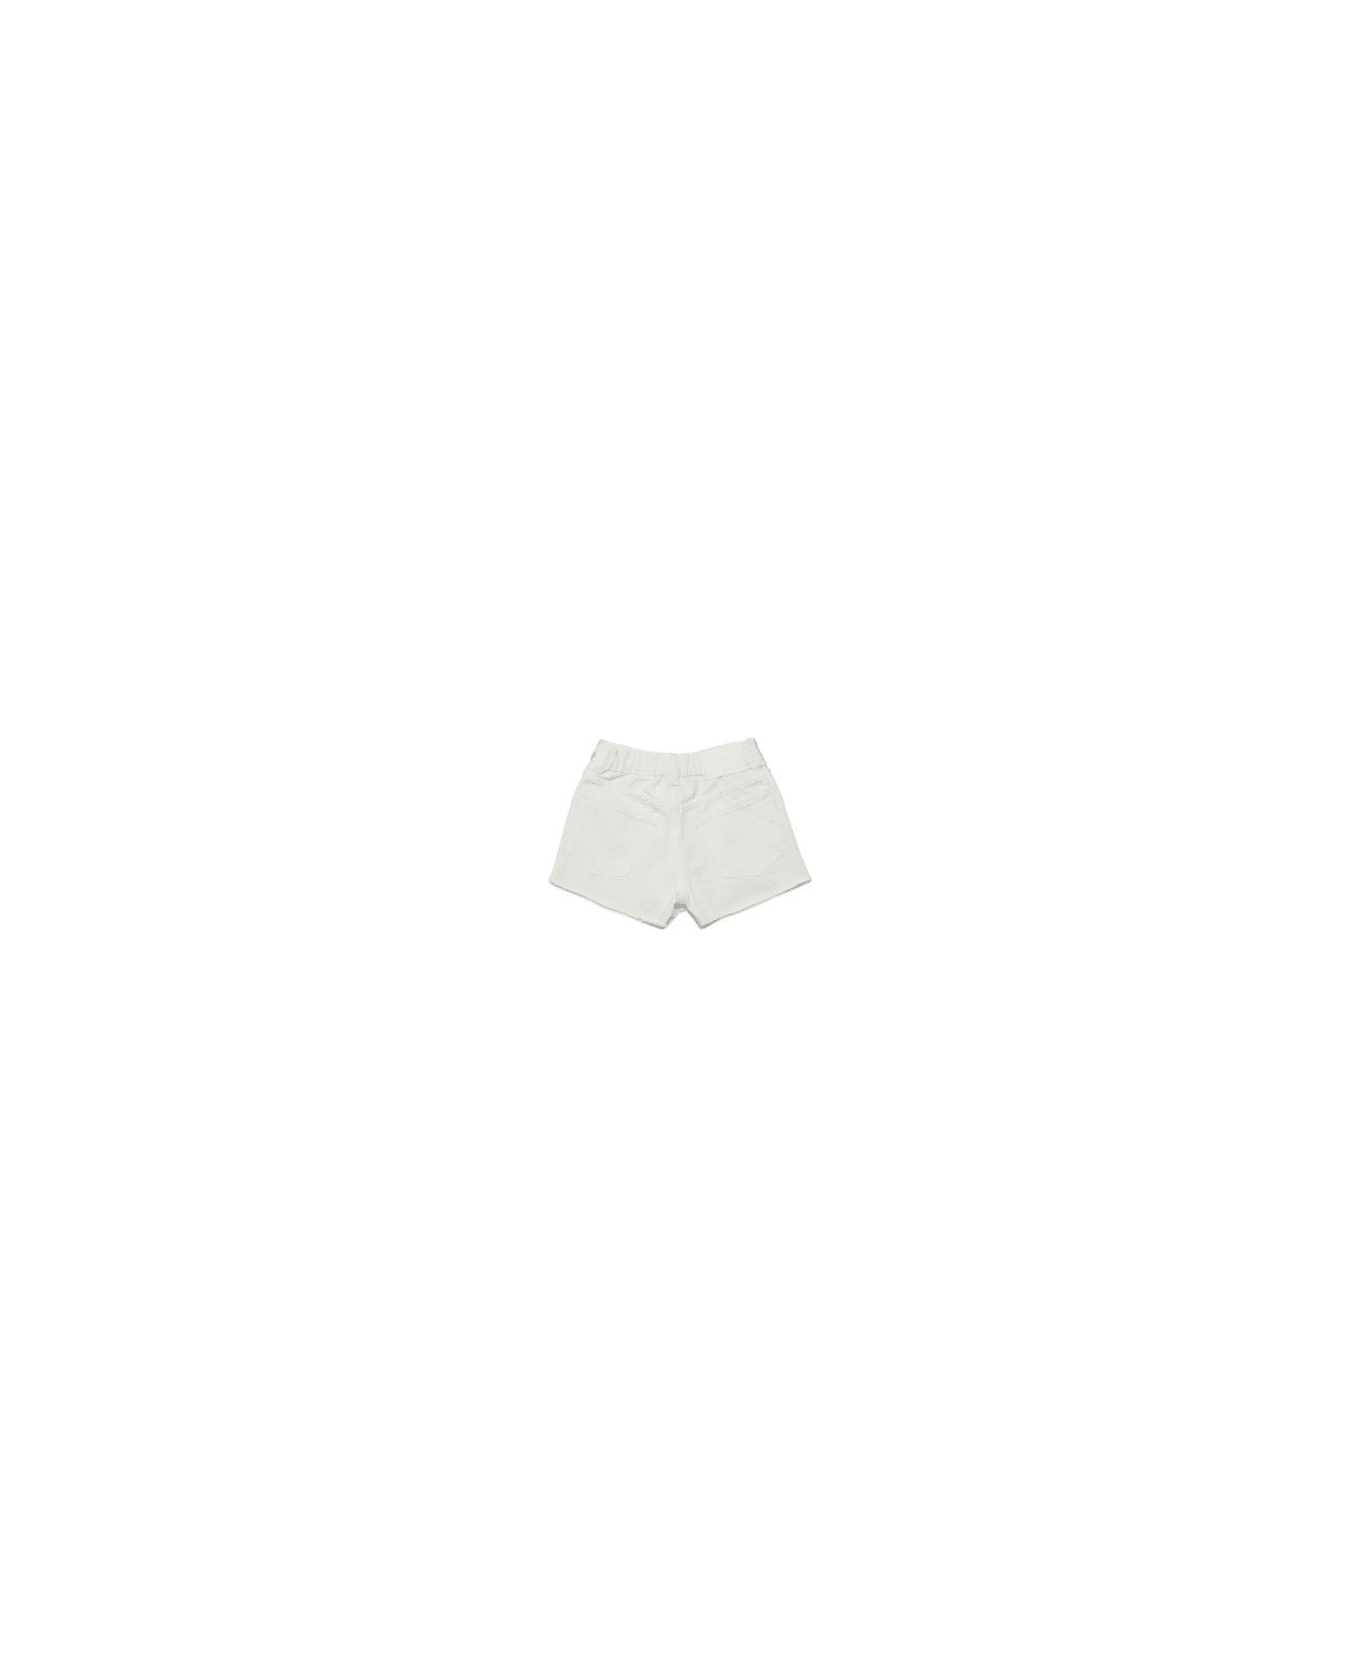 MM6 Maison Margiela Shorts Metallizzati - White ボトムス